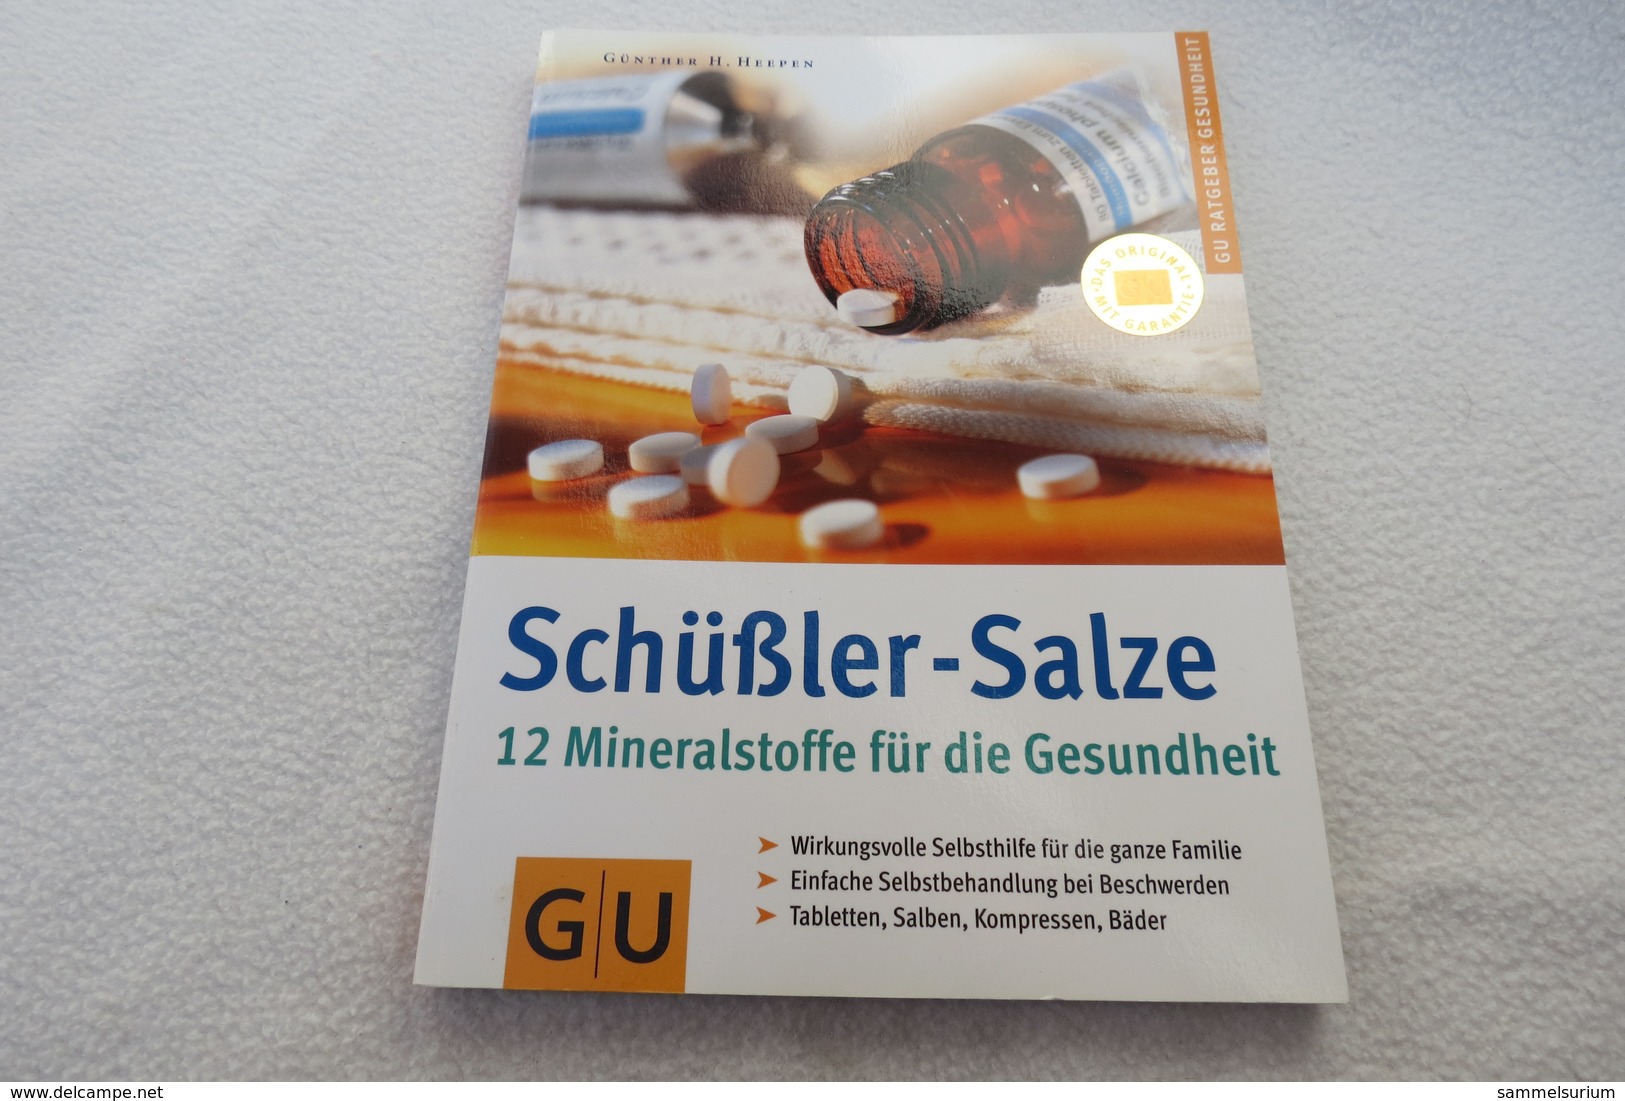 Günther H. Heepen "Schüßler-Salze" 12 Mineralstoffe Für Die Gesundheit - Medizin & Gesundheit